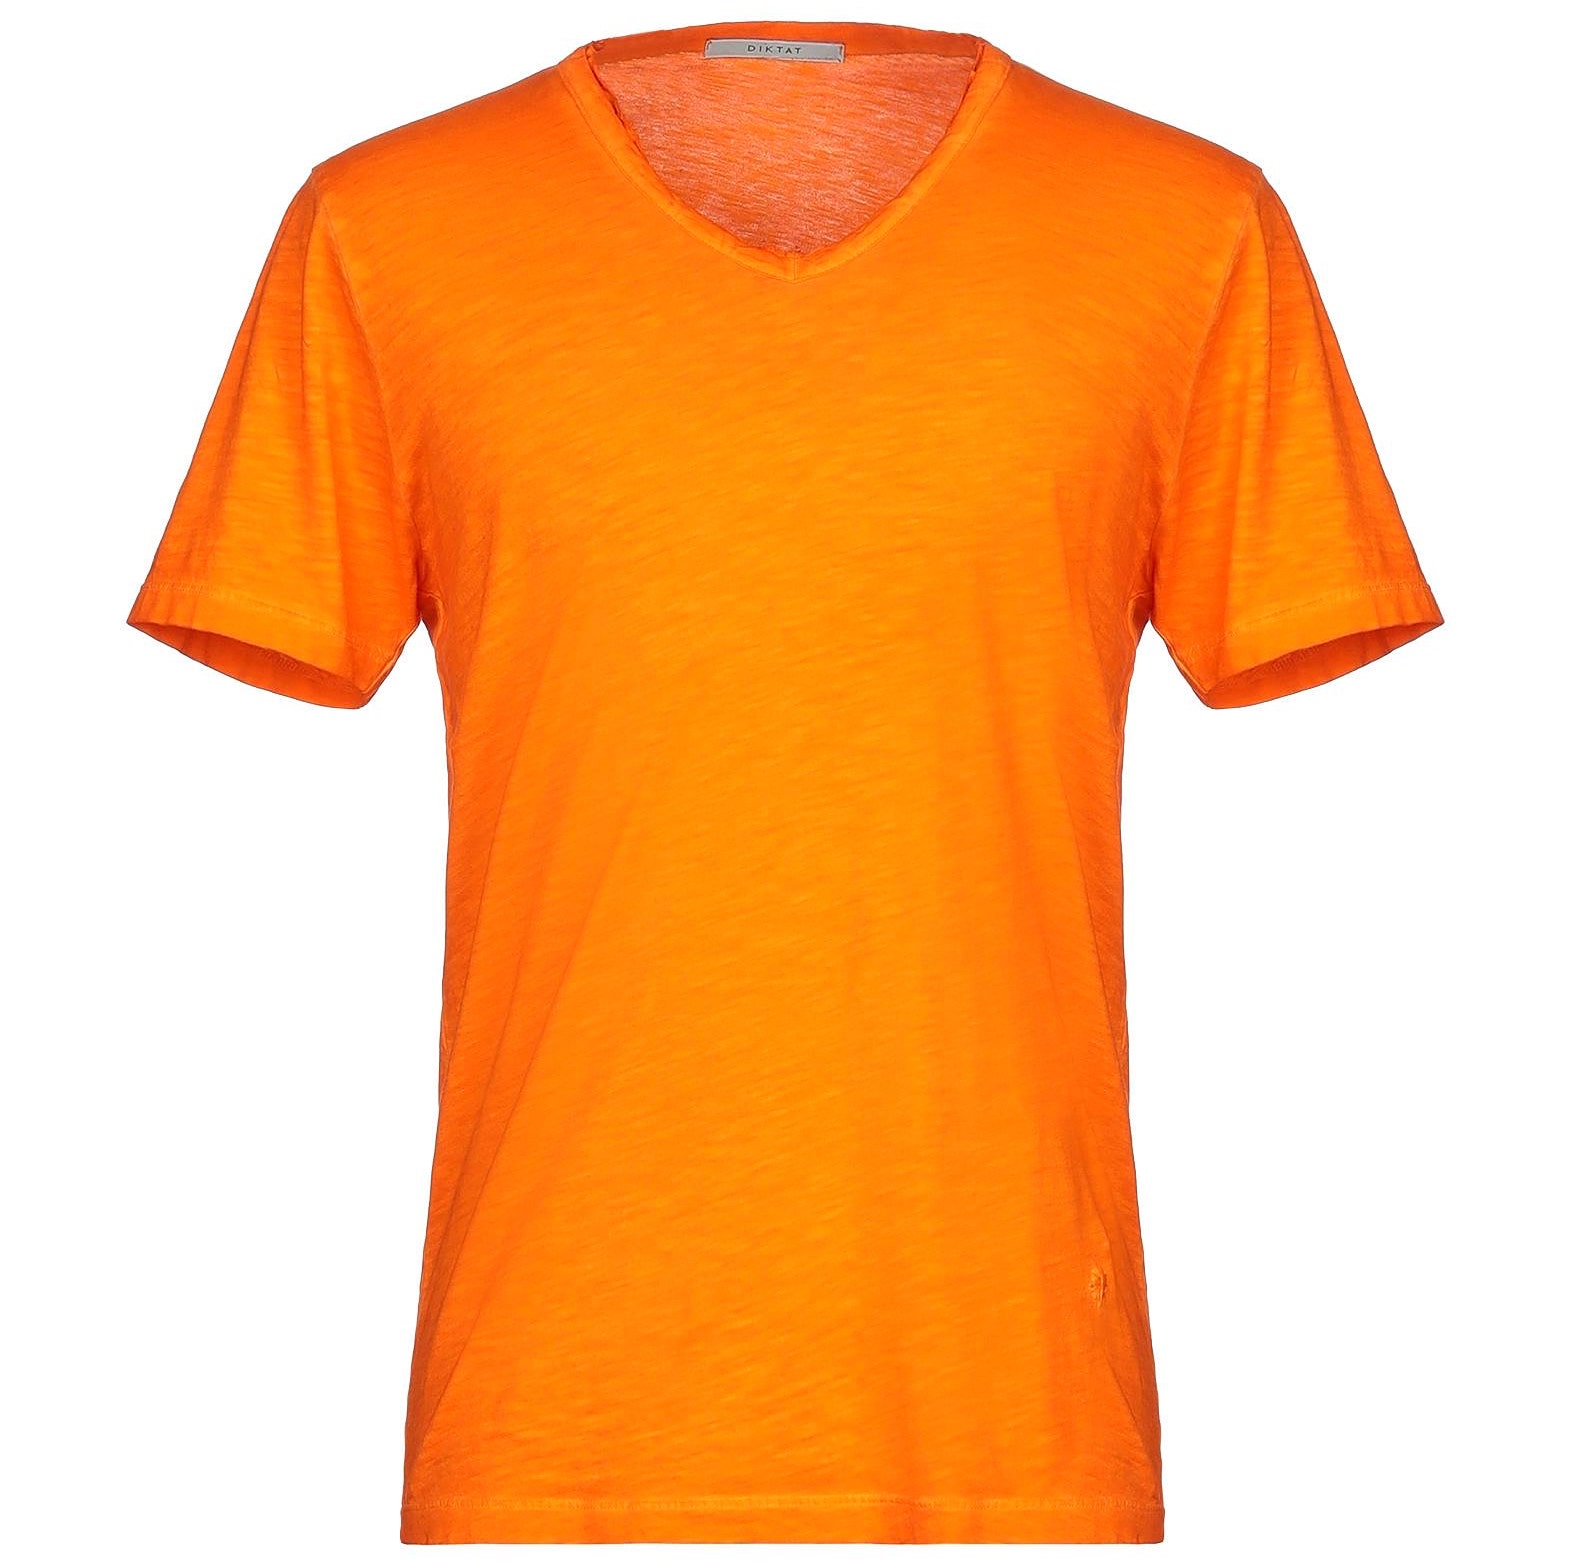 オレンジtシャツ コーデ特集 ビタミンカラーで明るい印象に仕上げたメンズの着こなし紹介 メンズファッションメディア Otokomae 男前研究所 ページ 4 ページ 4